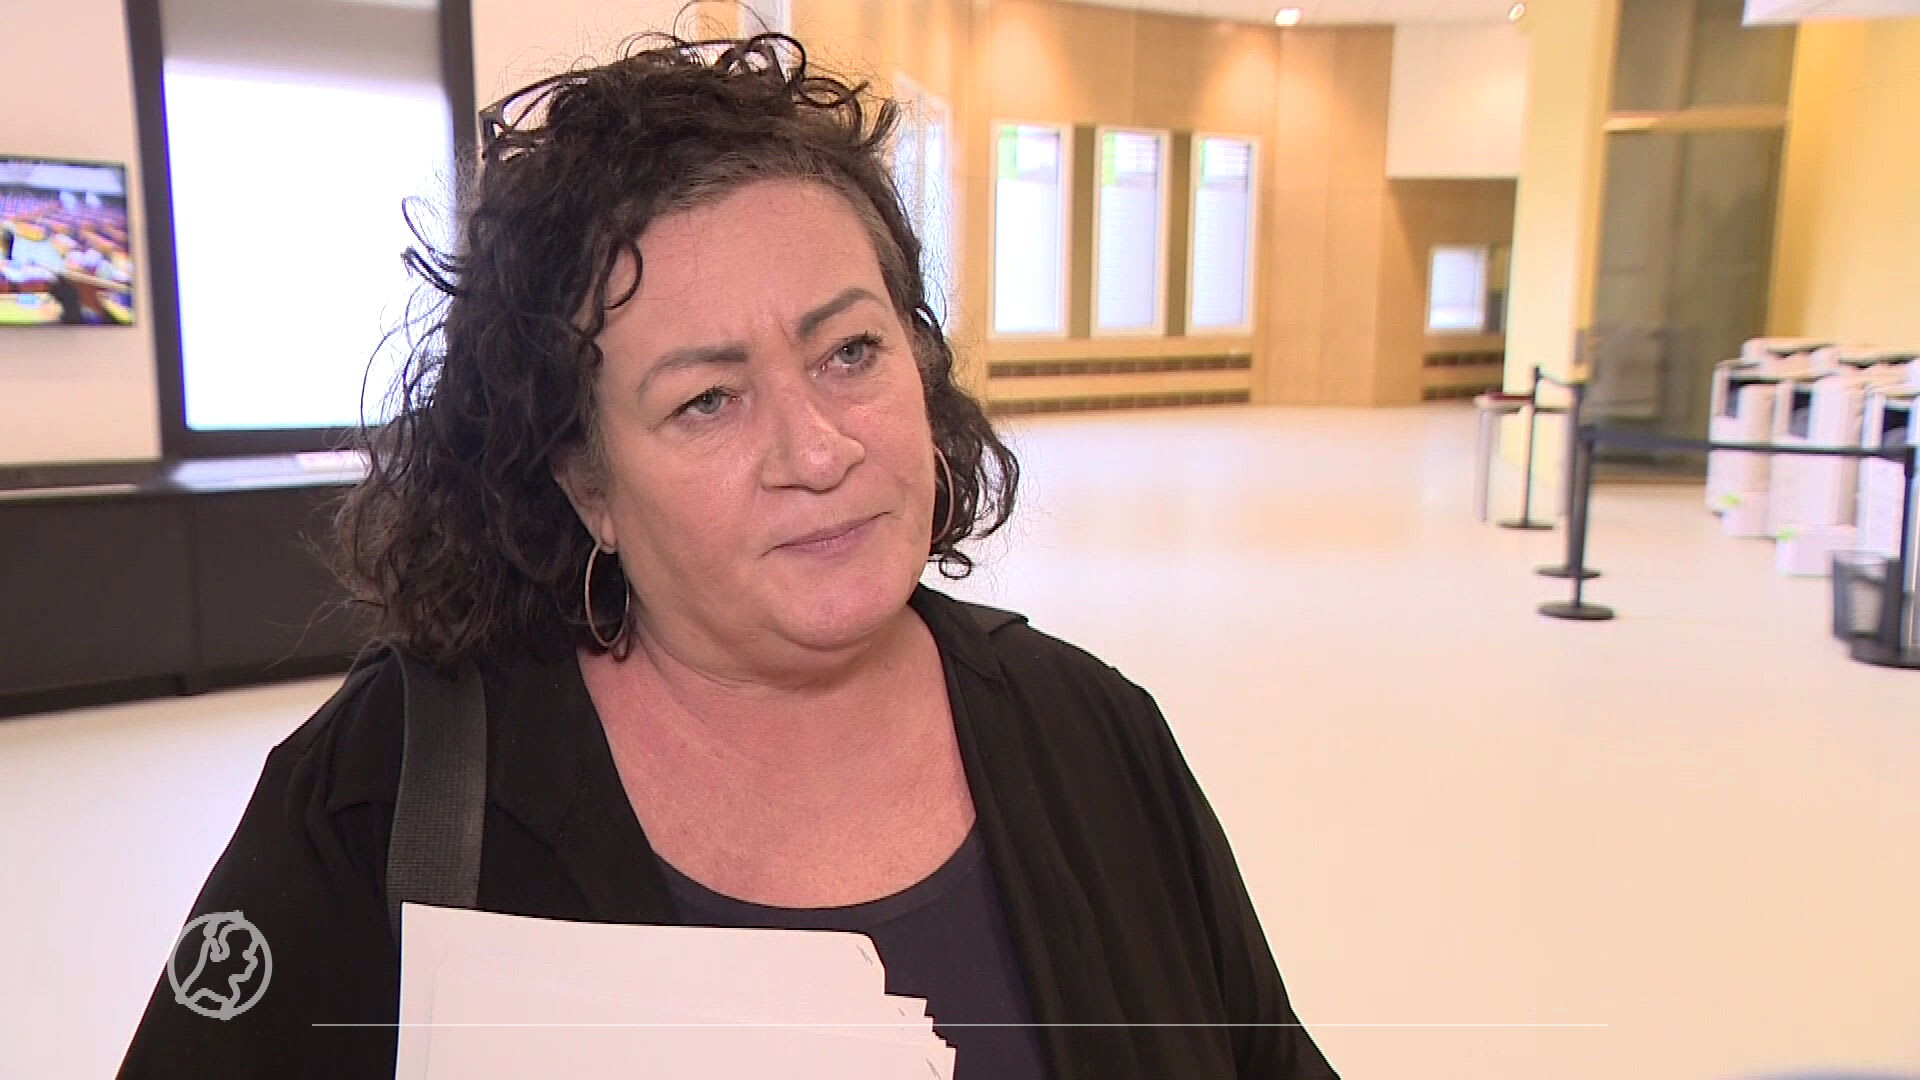 BBB-voorvrouw Caroline van der Plas: 'Boeren, blokkeer de snelwegen niet'